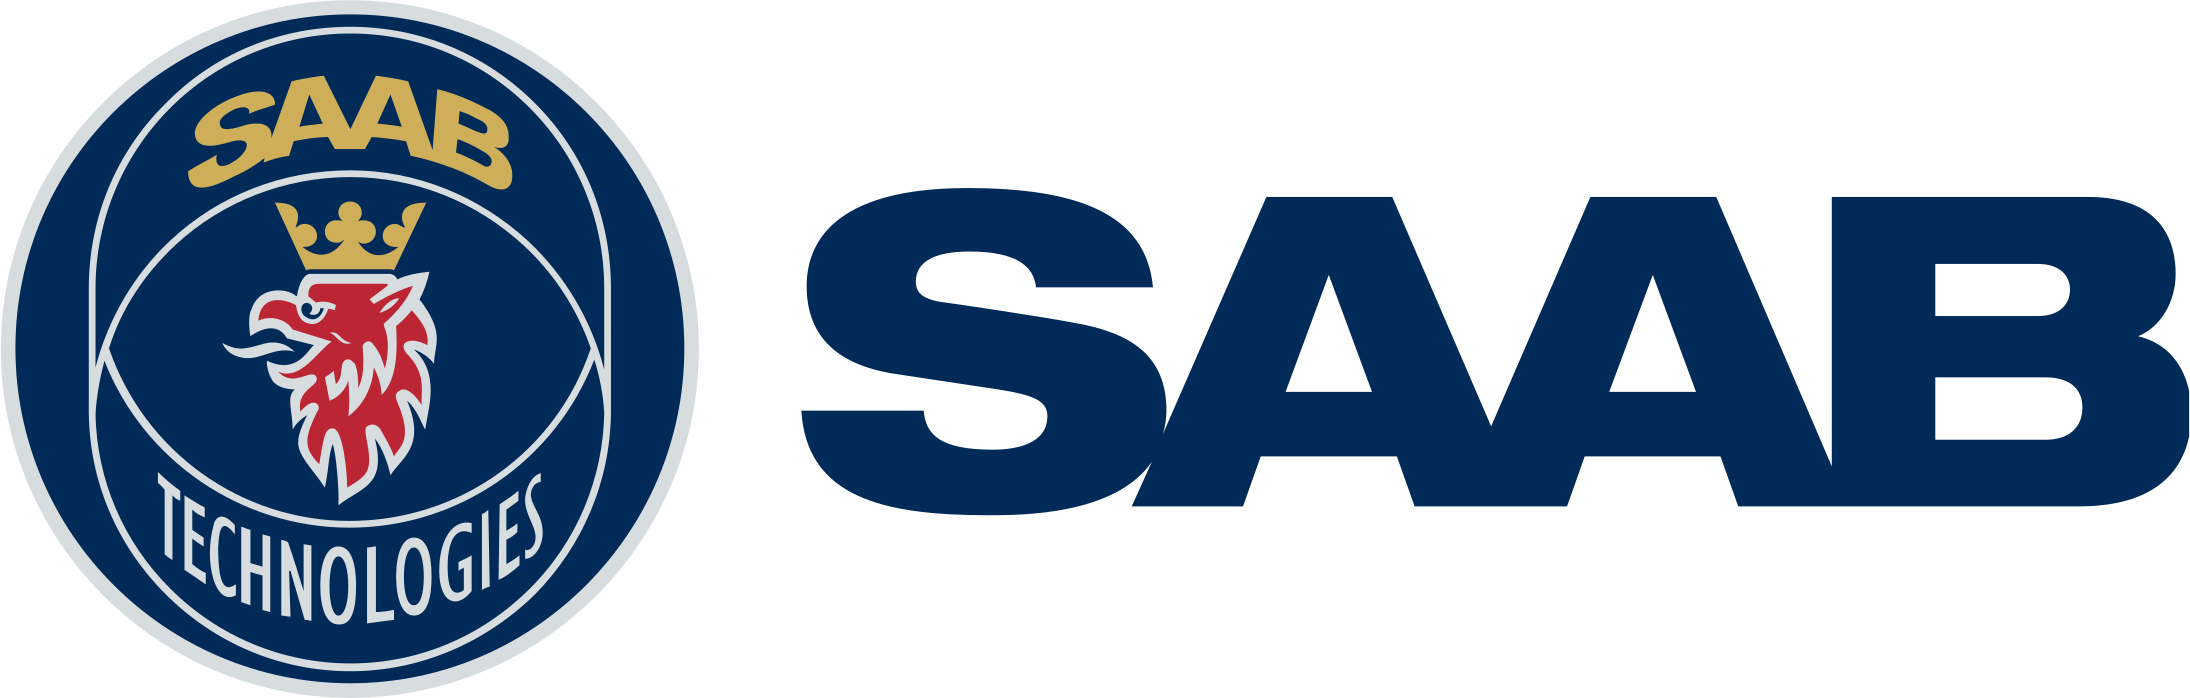 SAAB logo.